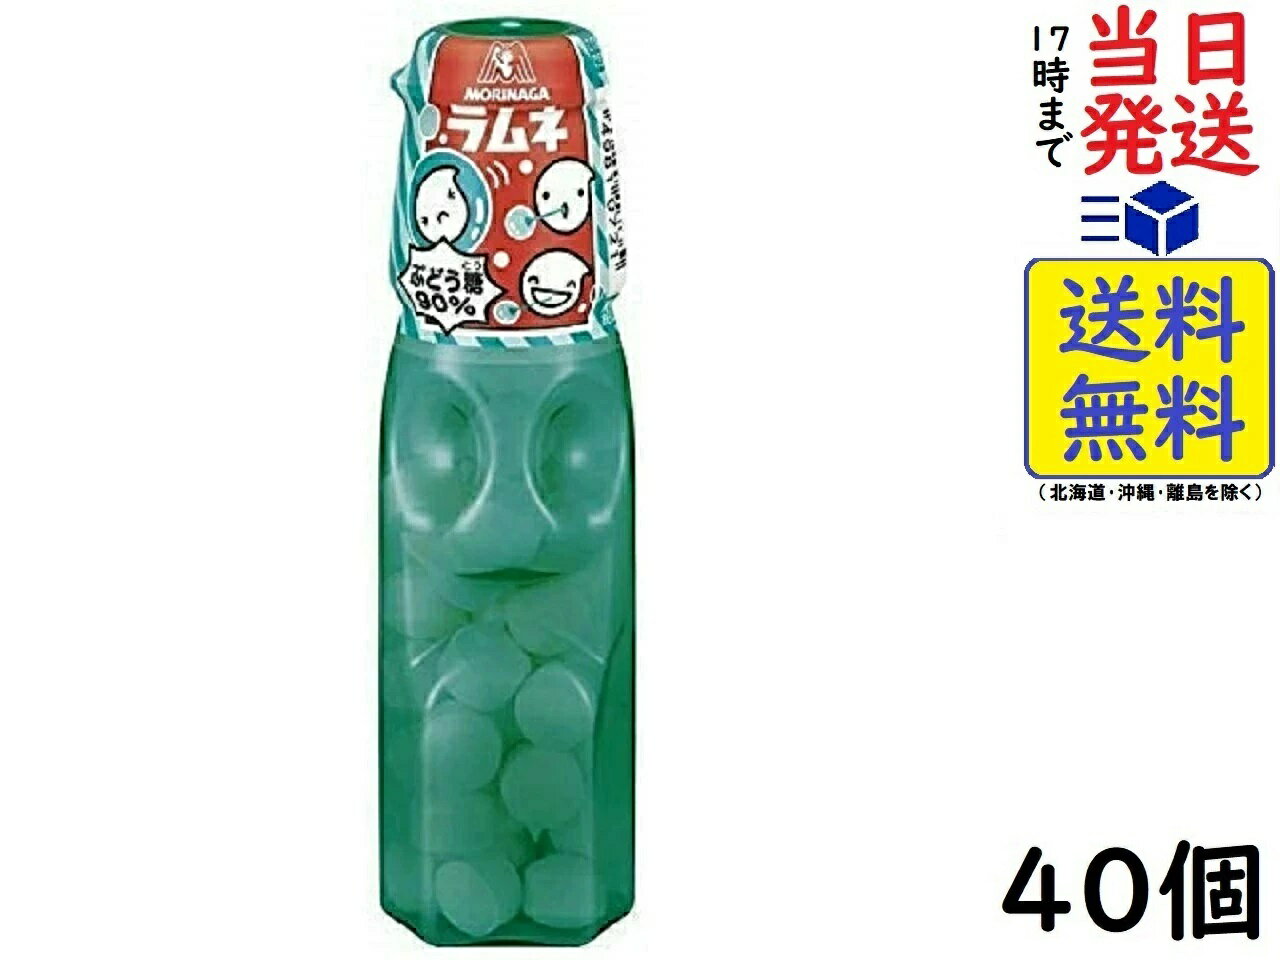 森永製菓 ラムネ 29g ×40個賞味期限20